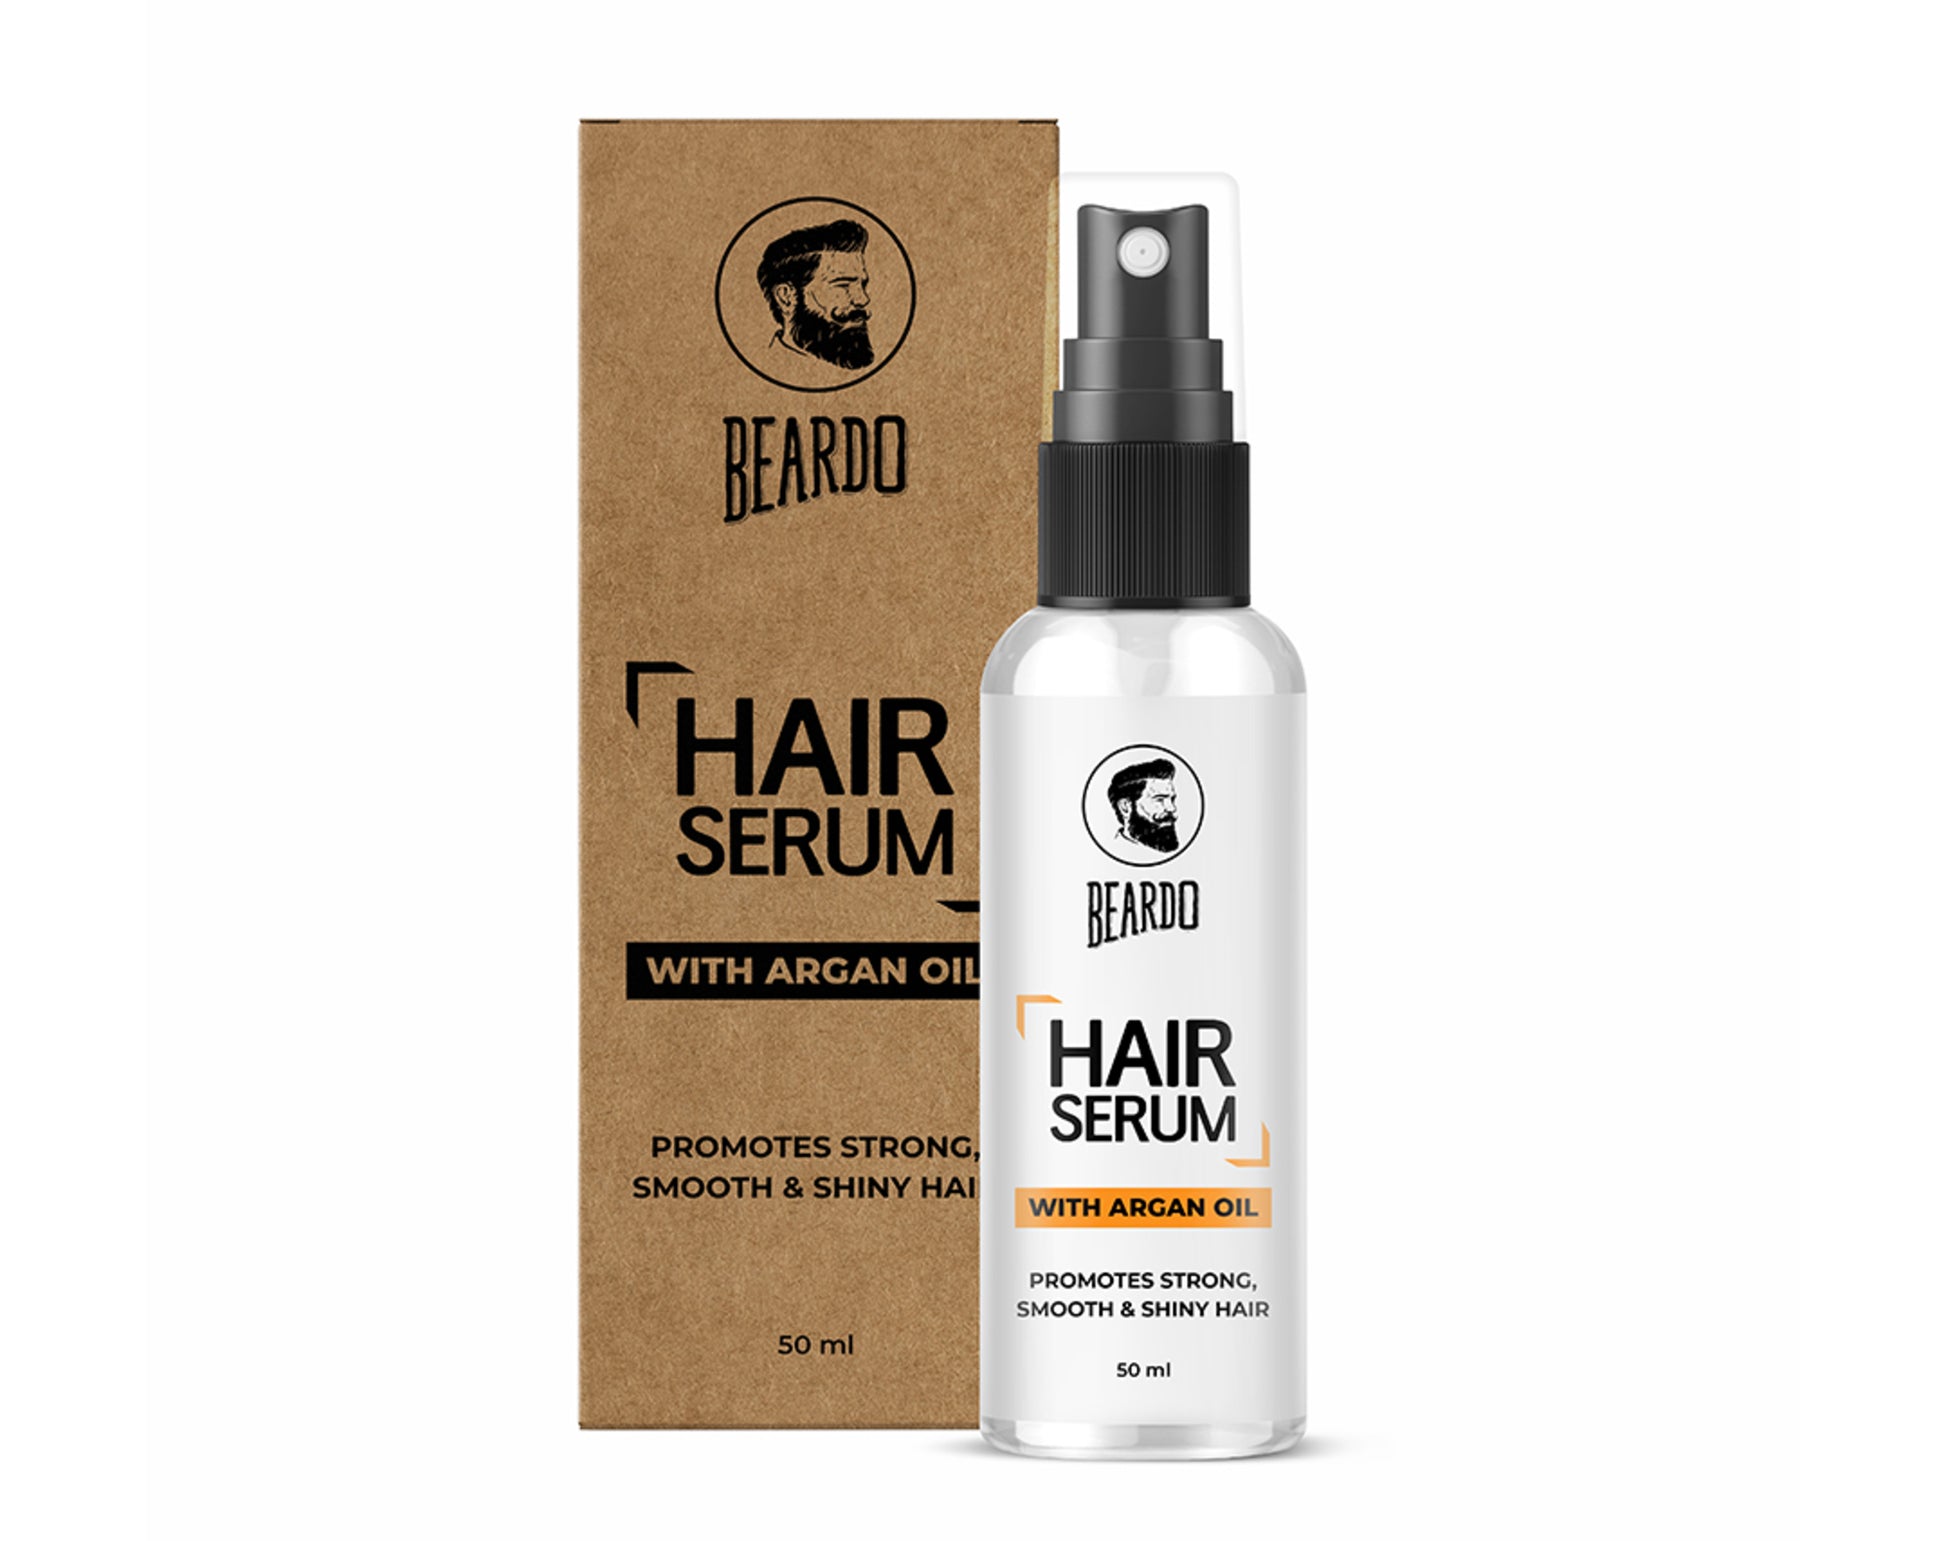 hair serum for men, hair serum for frizzy hair, argan oil hair serum